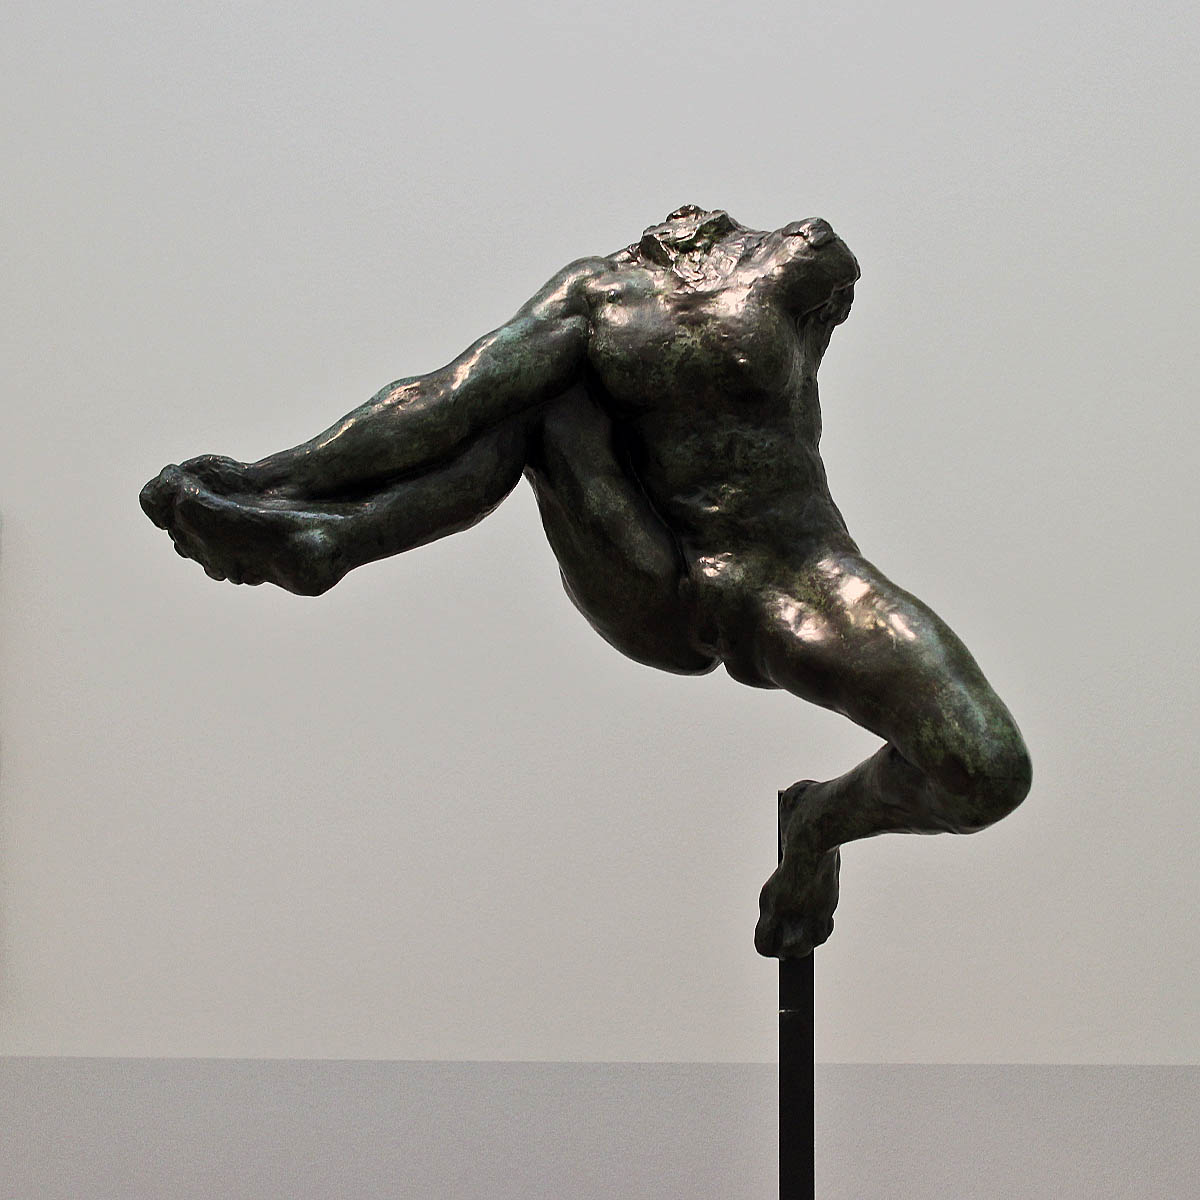 Auguste Rodin. Figure in Flight. 1891